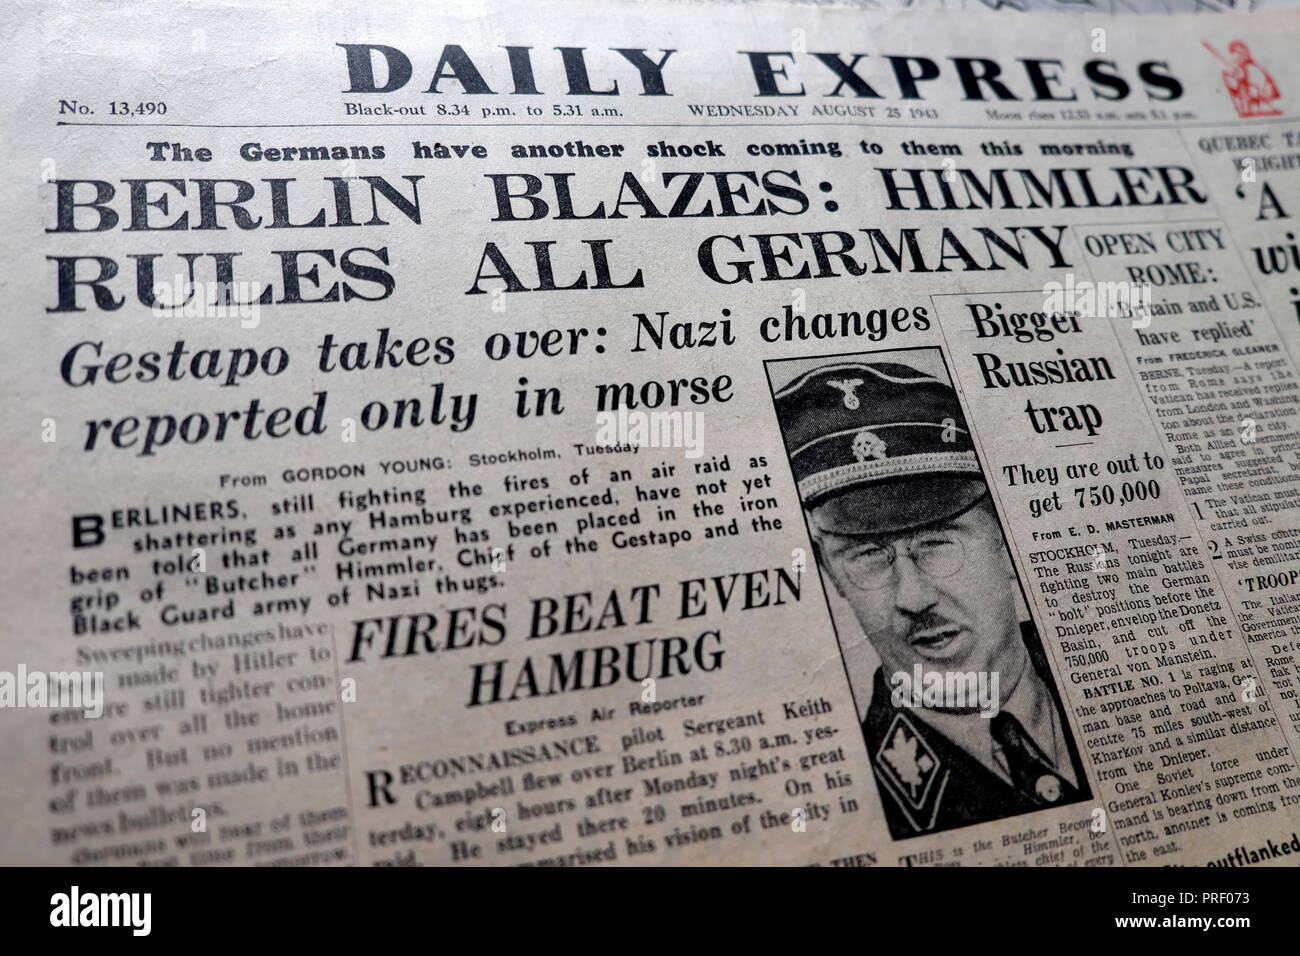 Startseite Schlagzeilen der Daily Express Zeitung "Berlin Flammen: Himmler Regeln alle Deutschland" London England UK 25 August 1943 Zweiter Weltkrieg Stockfoto